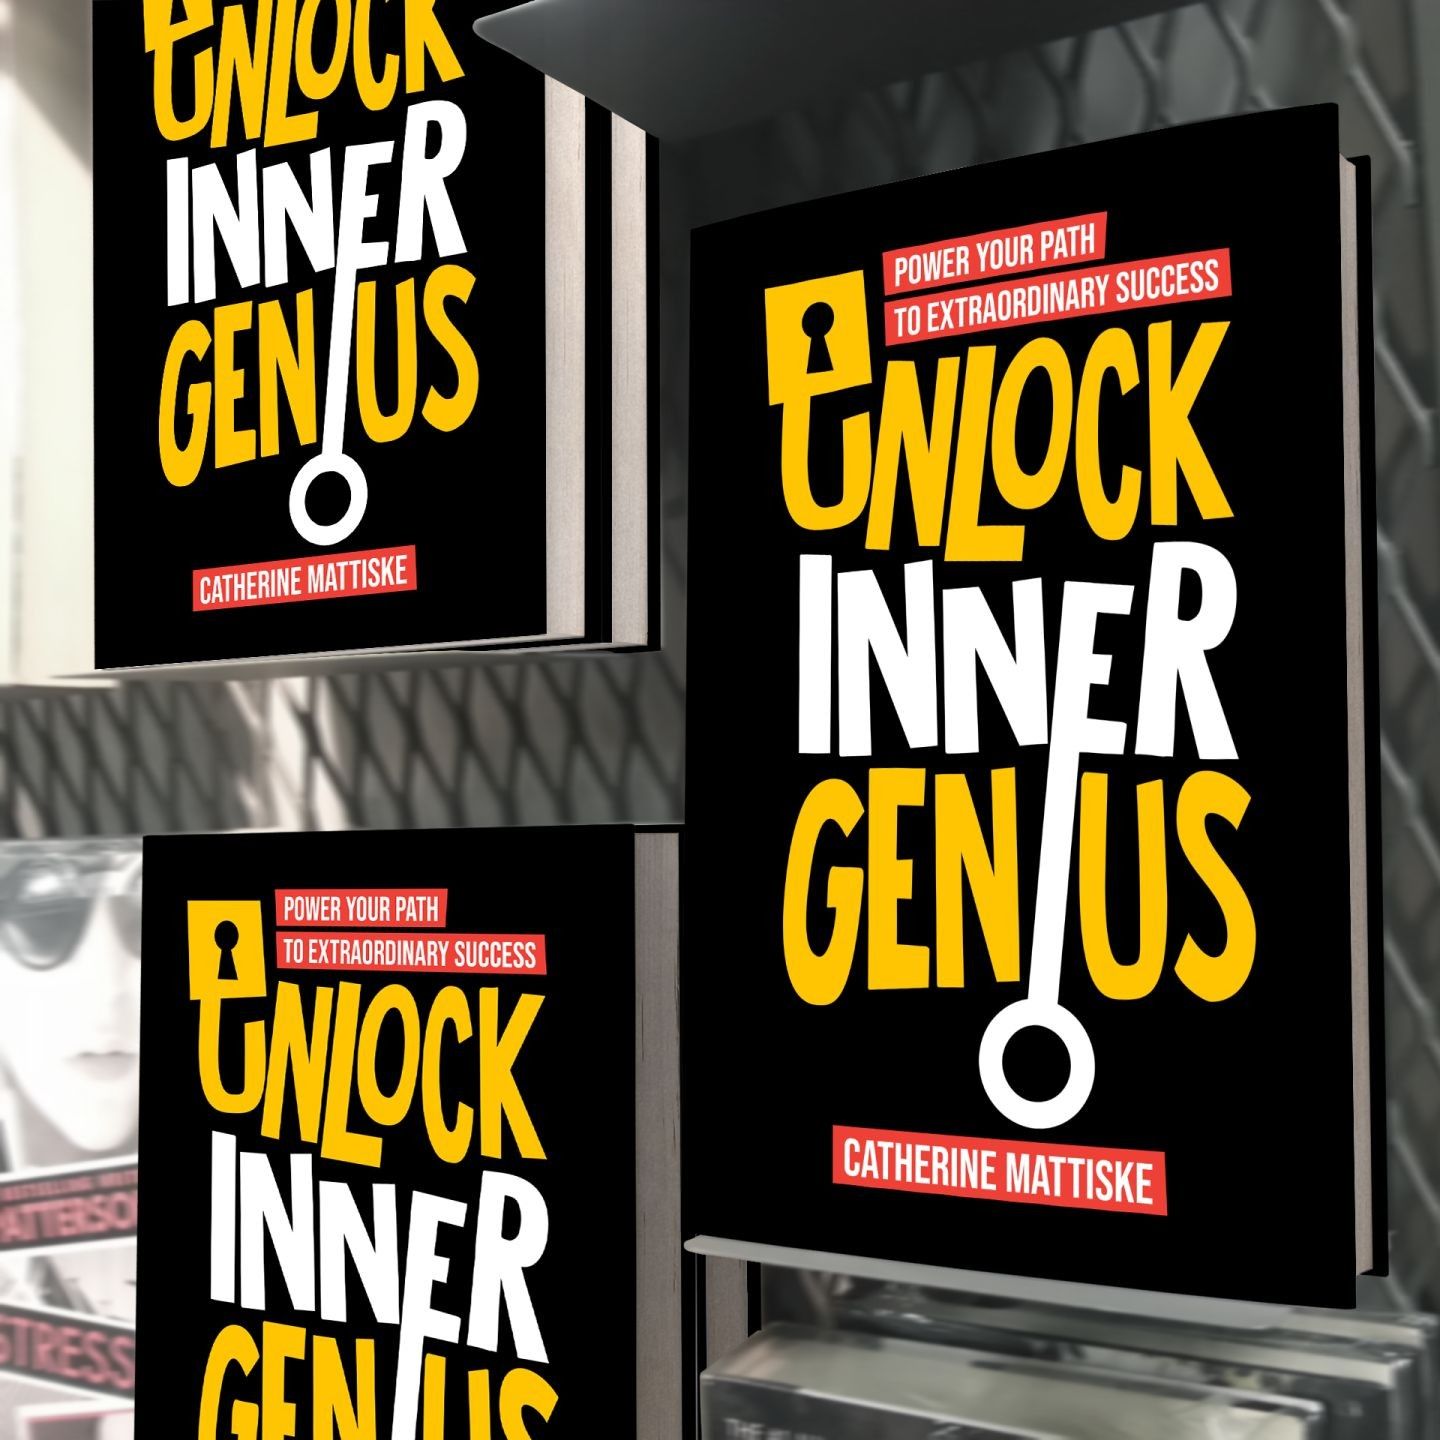 Unlock Inner Genius book covers on metal wall